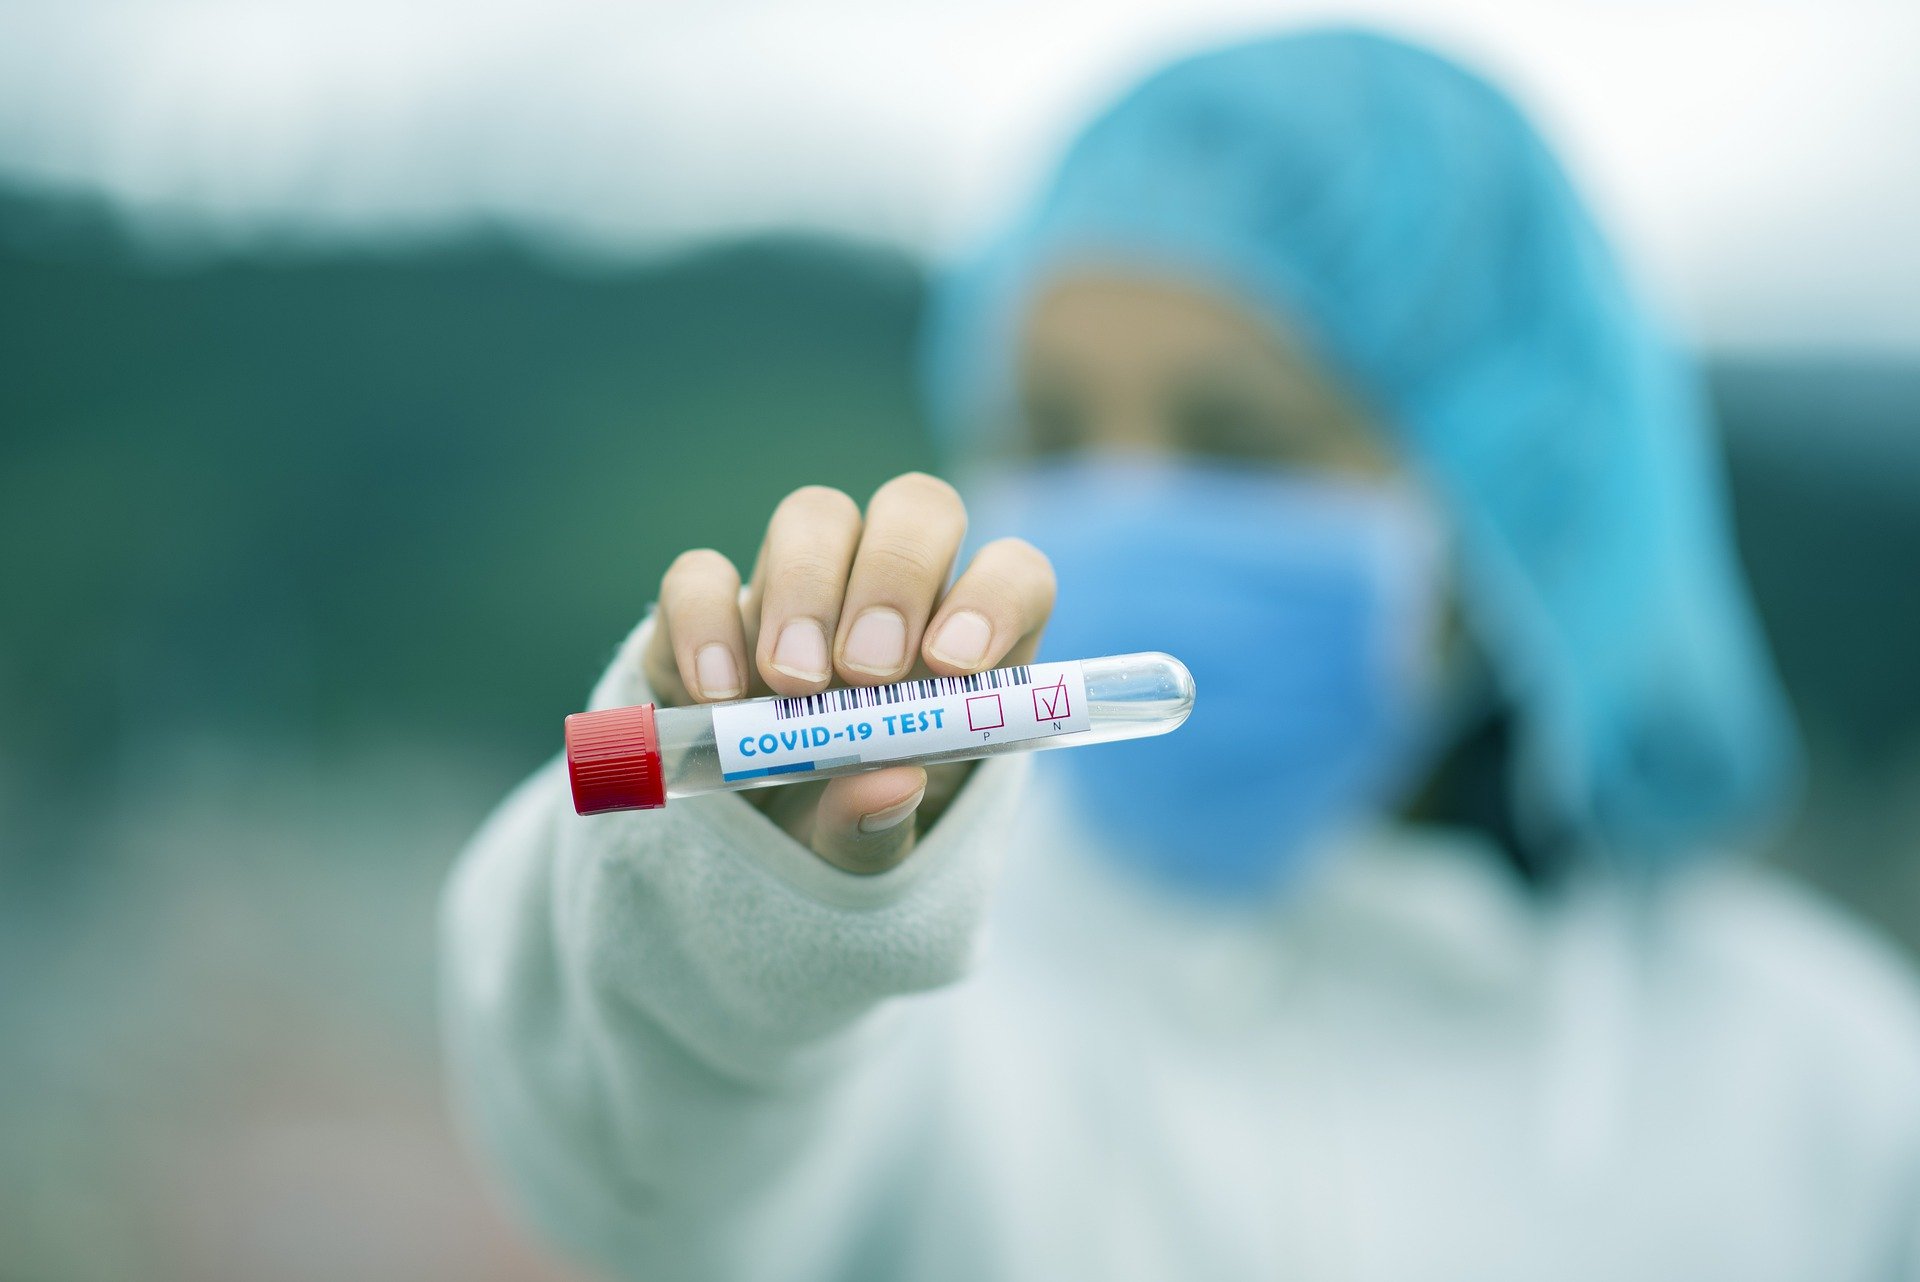 Coronavirus, in Toscana 11 nuovi positivi, un decesso e 3 guarigioni